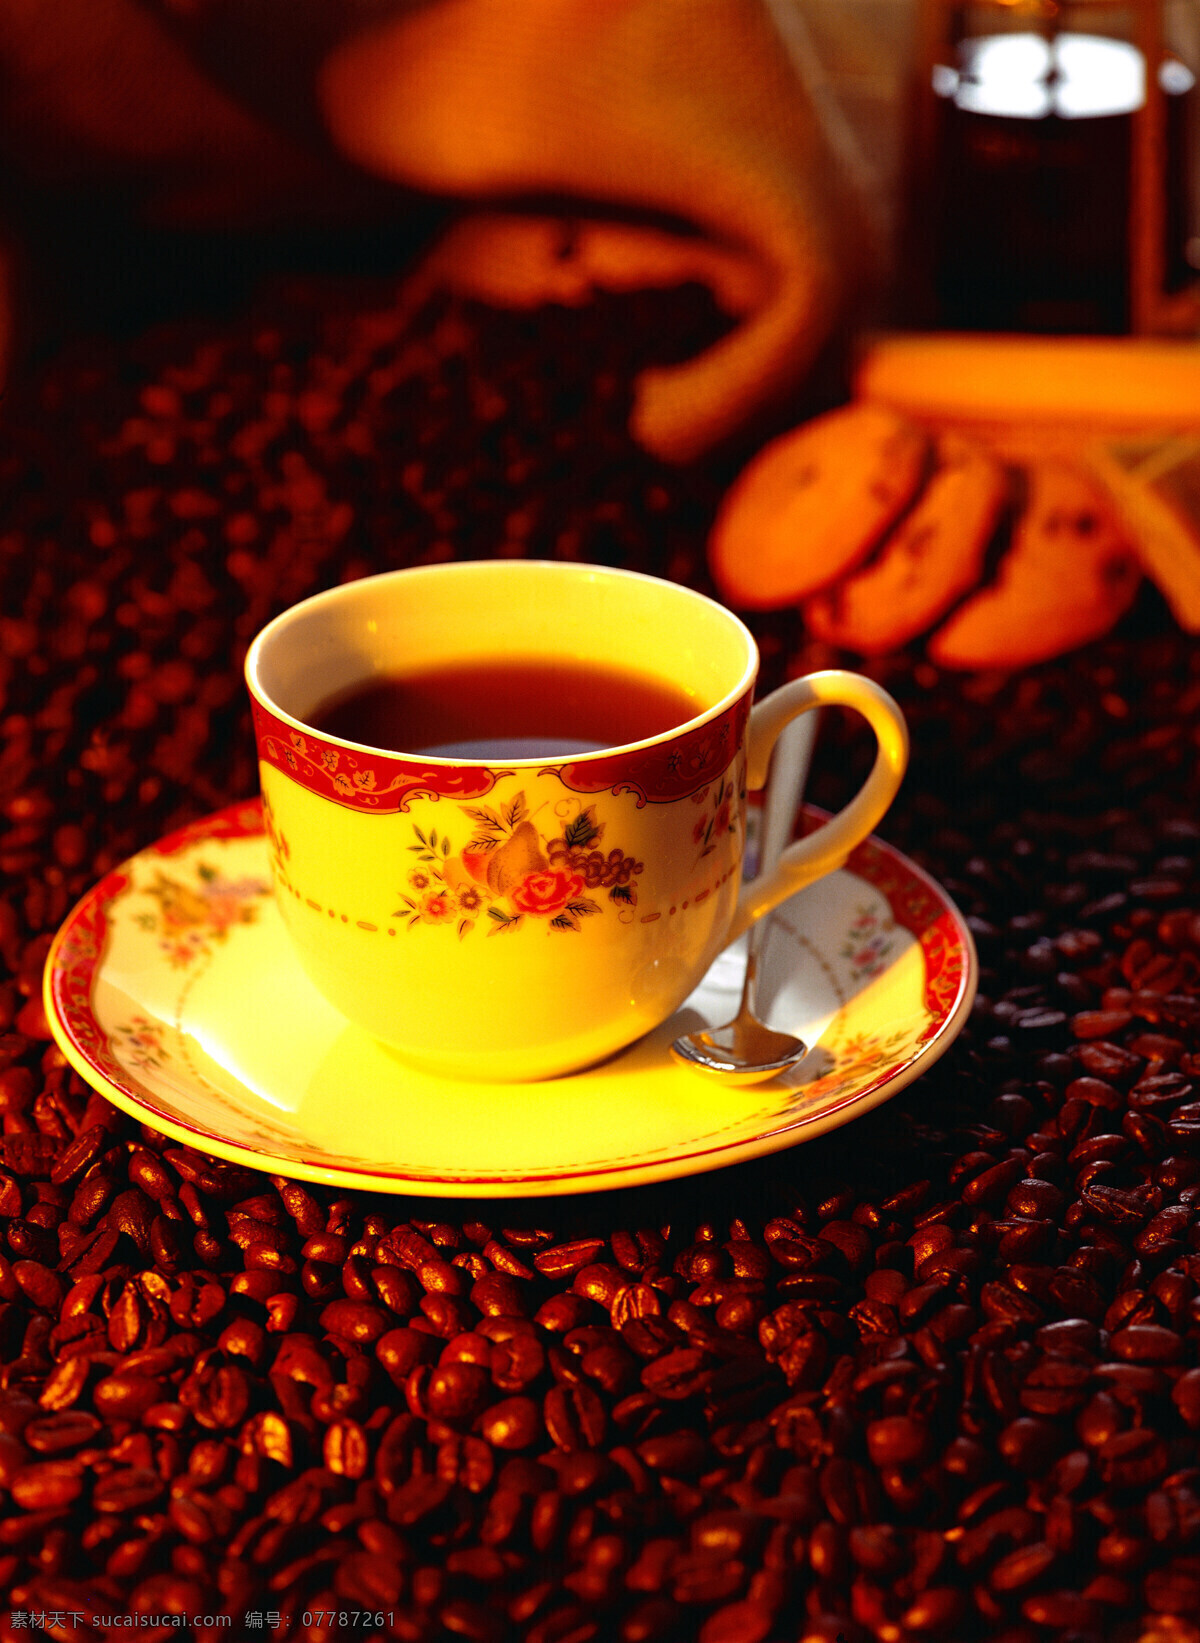 咖啡豆 上 浓香 咖啡 一堆咖啡豆 颗粒 果实 饱满 许多 很多 coffee 褐色 托盘 杯子 花陶瓷 麻袋 包装 铺垫 高清图片 咖啡图片 餐饮美食